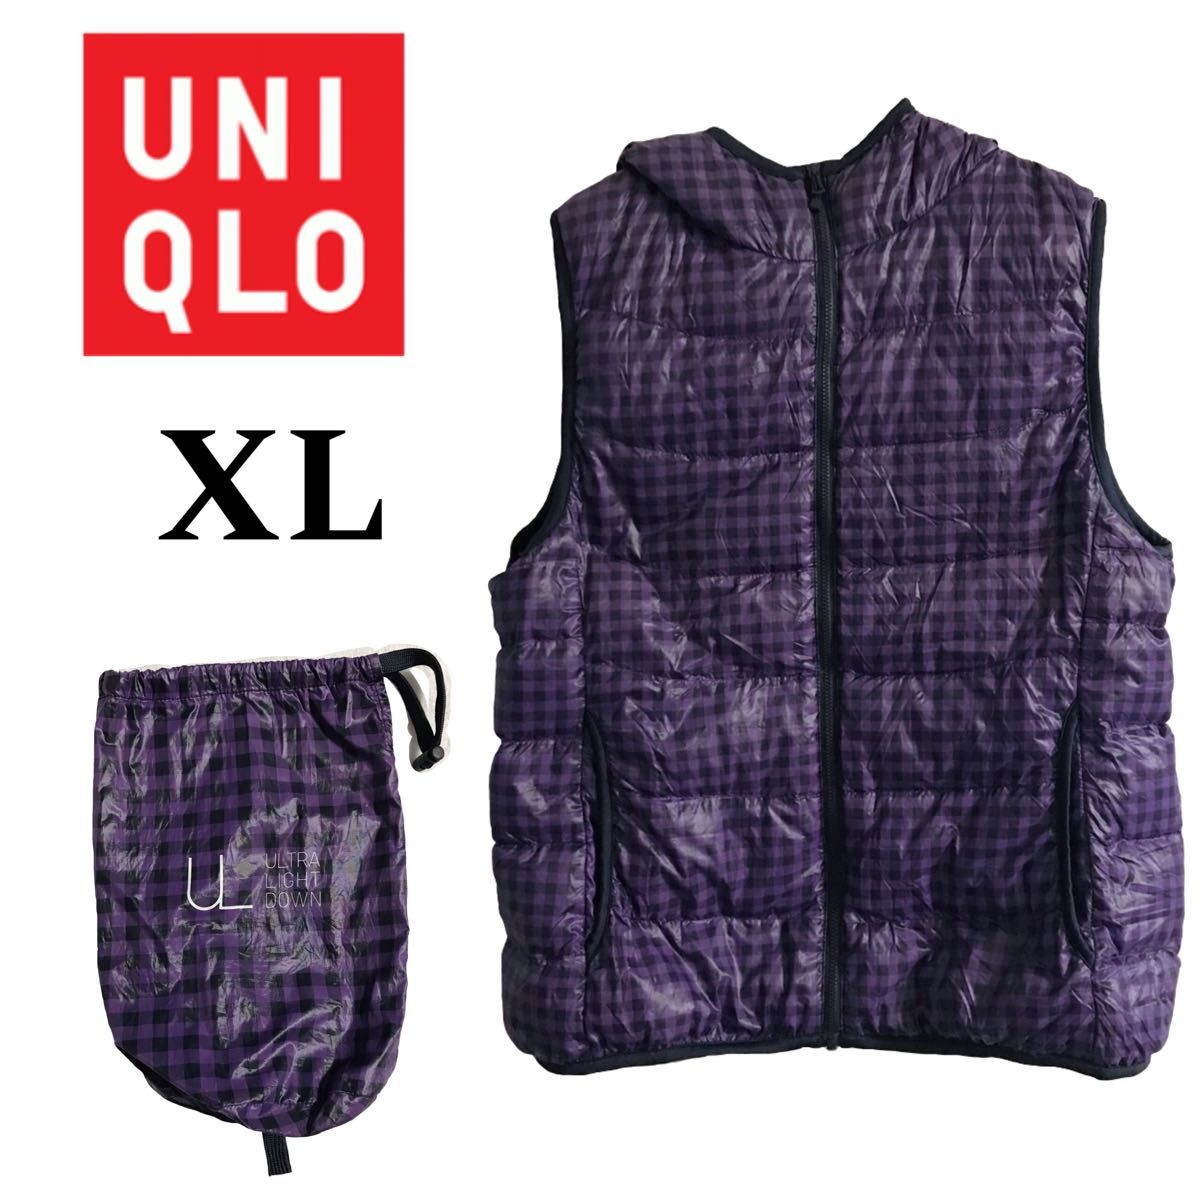 ユニクロ UNIQLO ダウンベスト チェック 紫 フード付き ジップアップ パーカー コンパクトダウン ノースリーブ XL